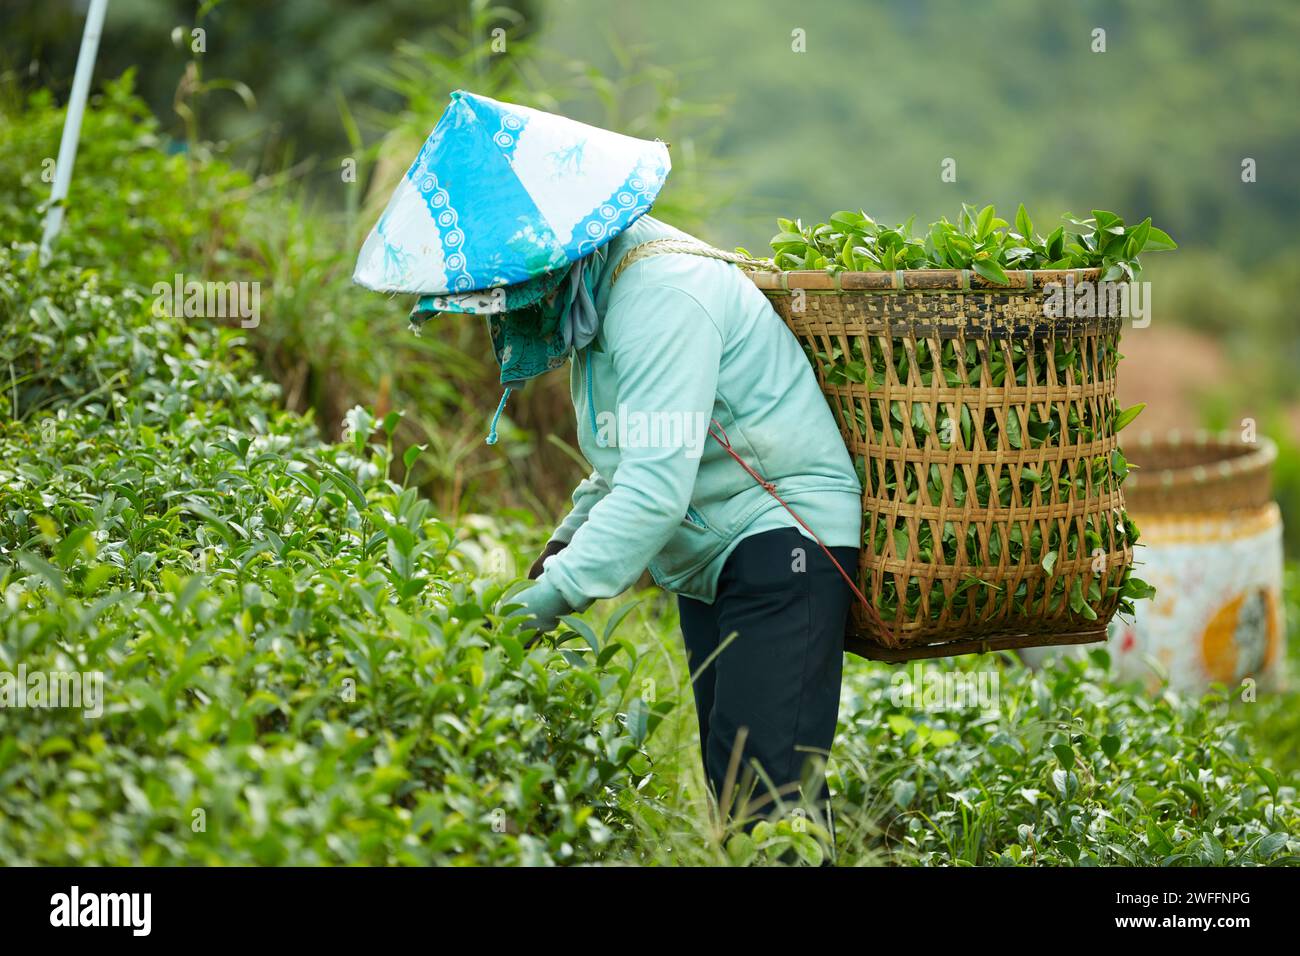 Eine Farmerin in in blauem Hemd mit konischem Hut auf dem Kopf und einem großen Bambuskorb auf dem Rücken erntet grüne Teeblätter auf einer Teeplantage Stockfoto